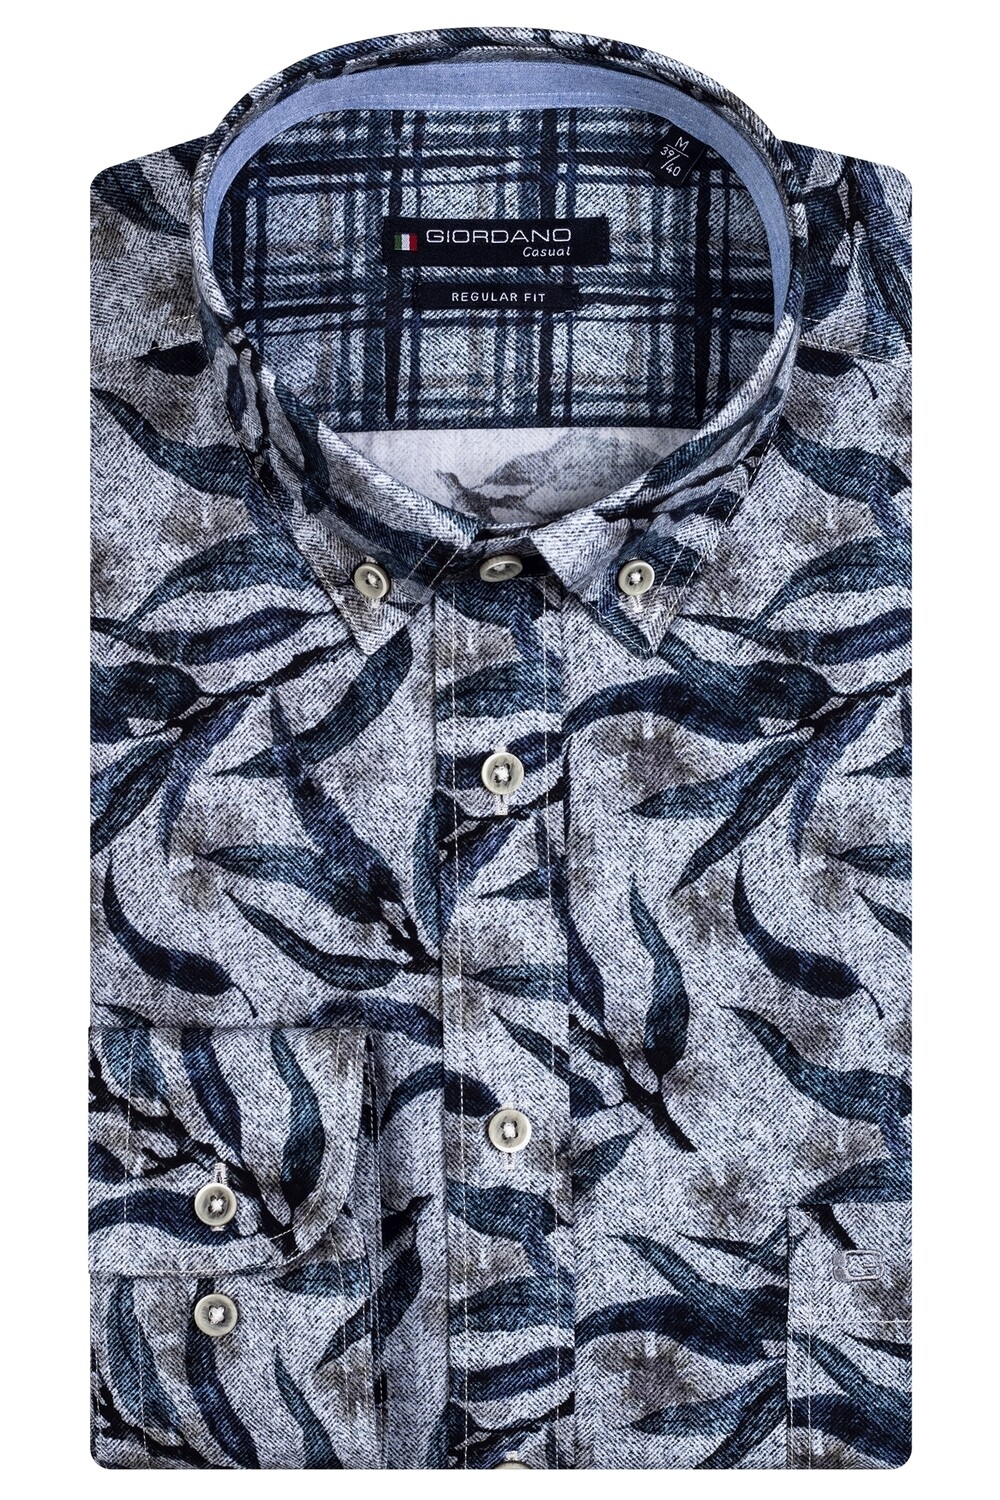 Giordano shirt bloem print blauw-taupe